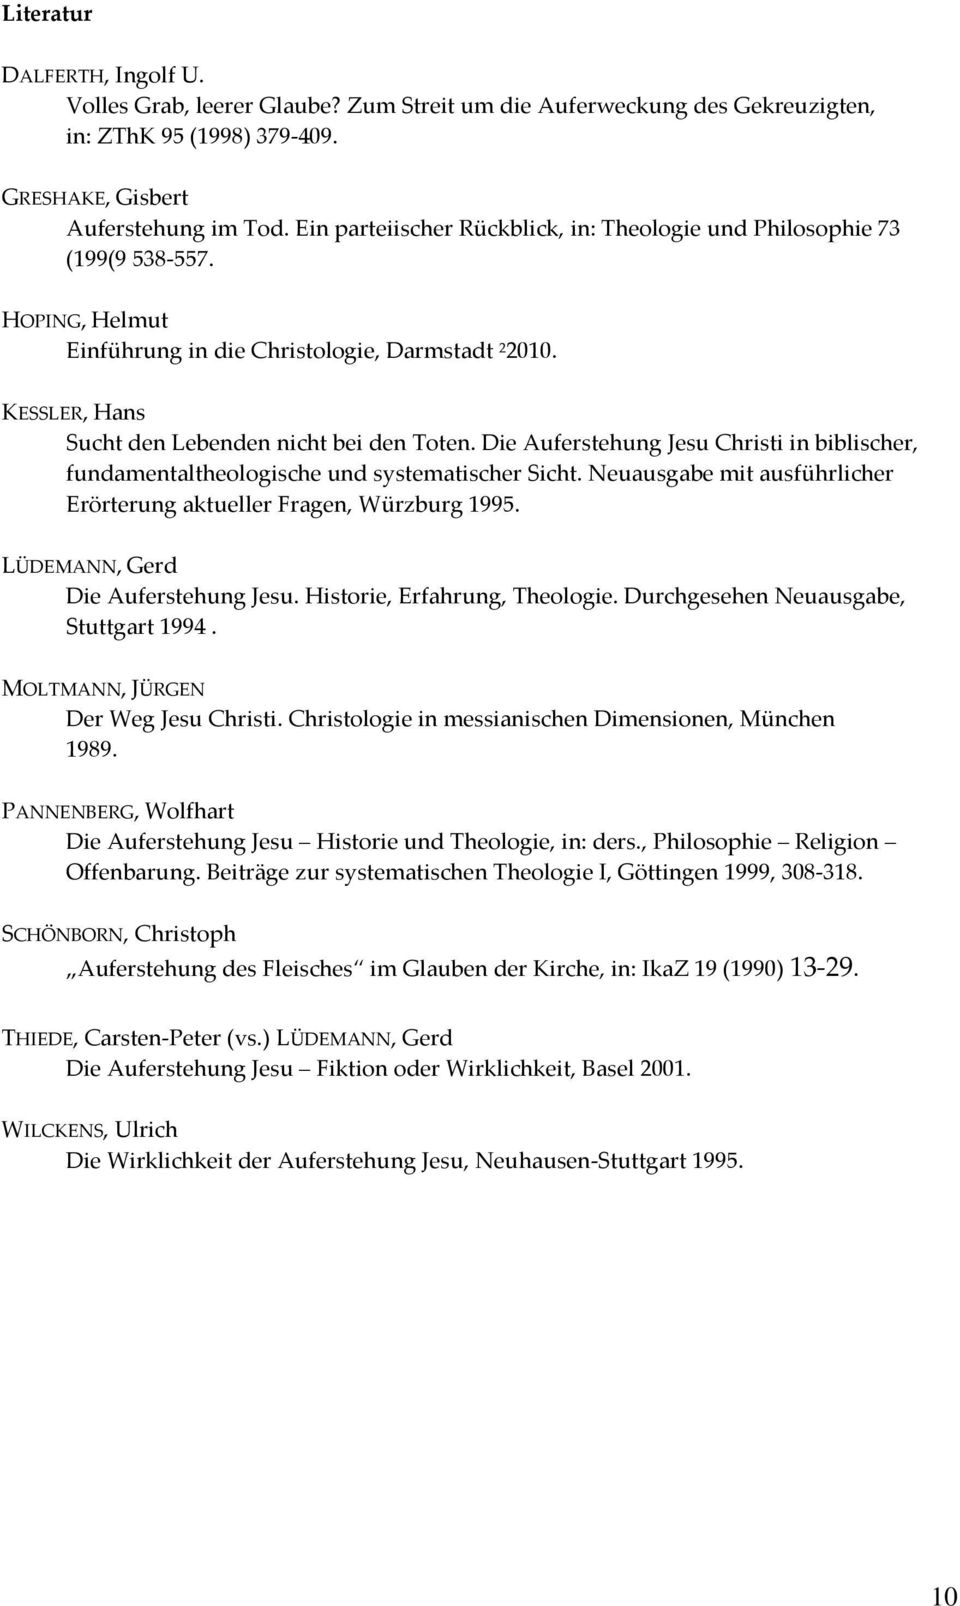 Die Auferstehung Jesu Christi in biblischer, fundamentaltheologische und systematischer Sicht. Neuausgabe mit ausführlicher Erörterung aktueller Fragen, Würzburg 1995.